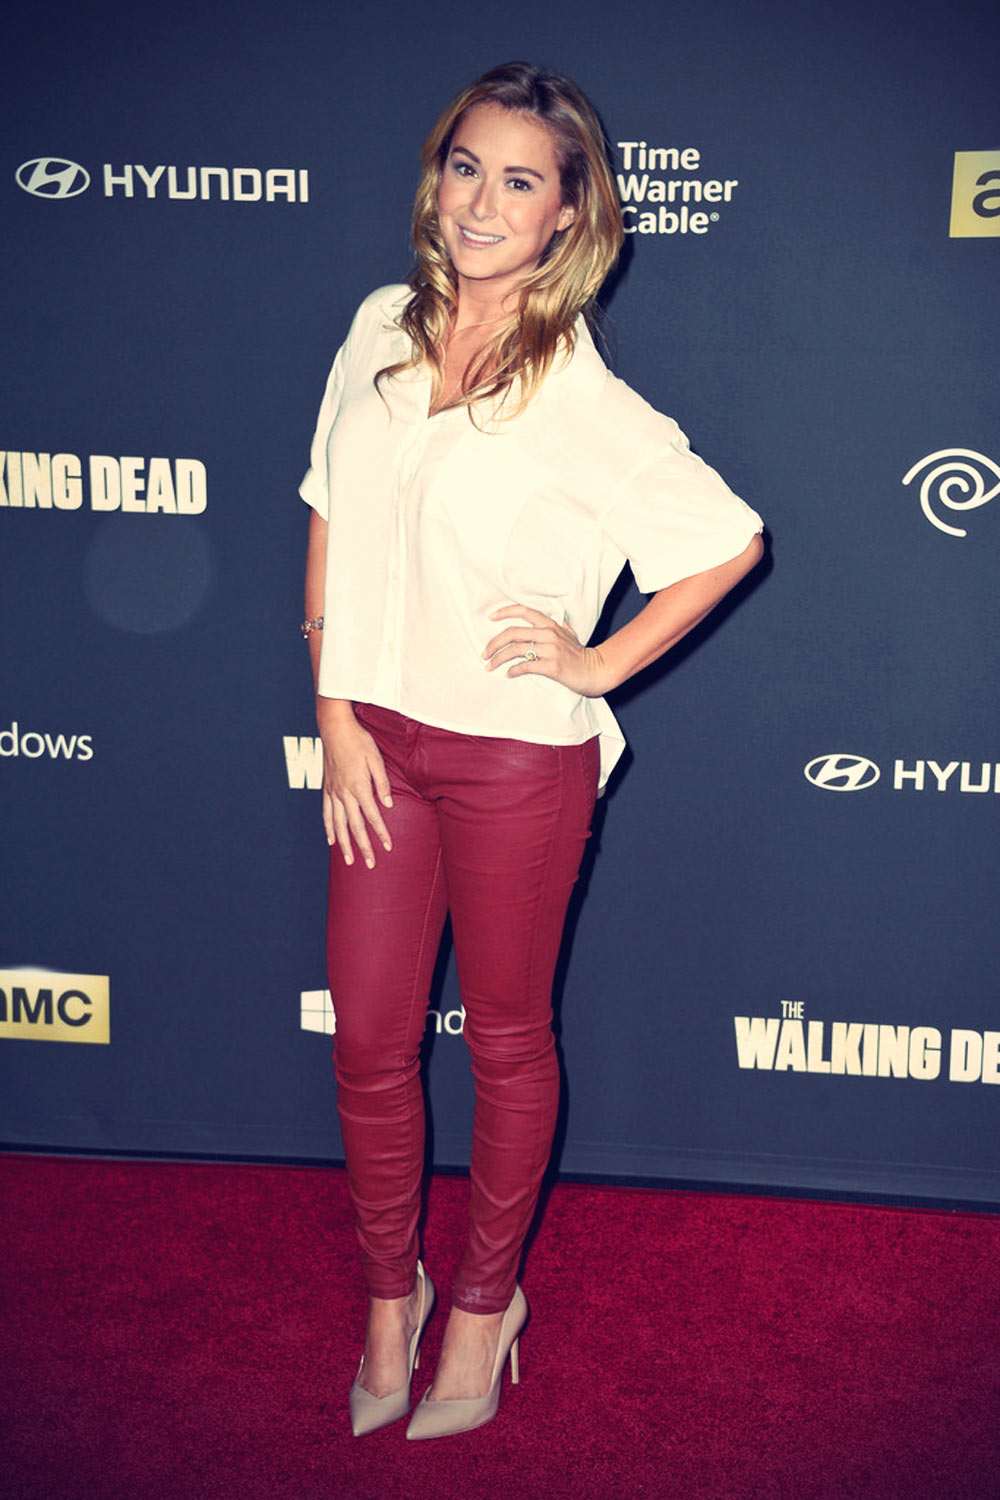 Alexa Vega attends The Walking Dead 4th Season Premiere